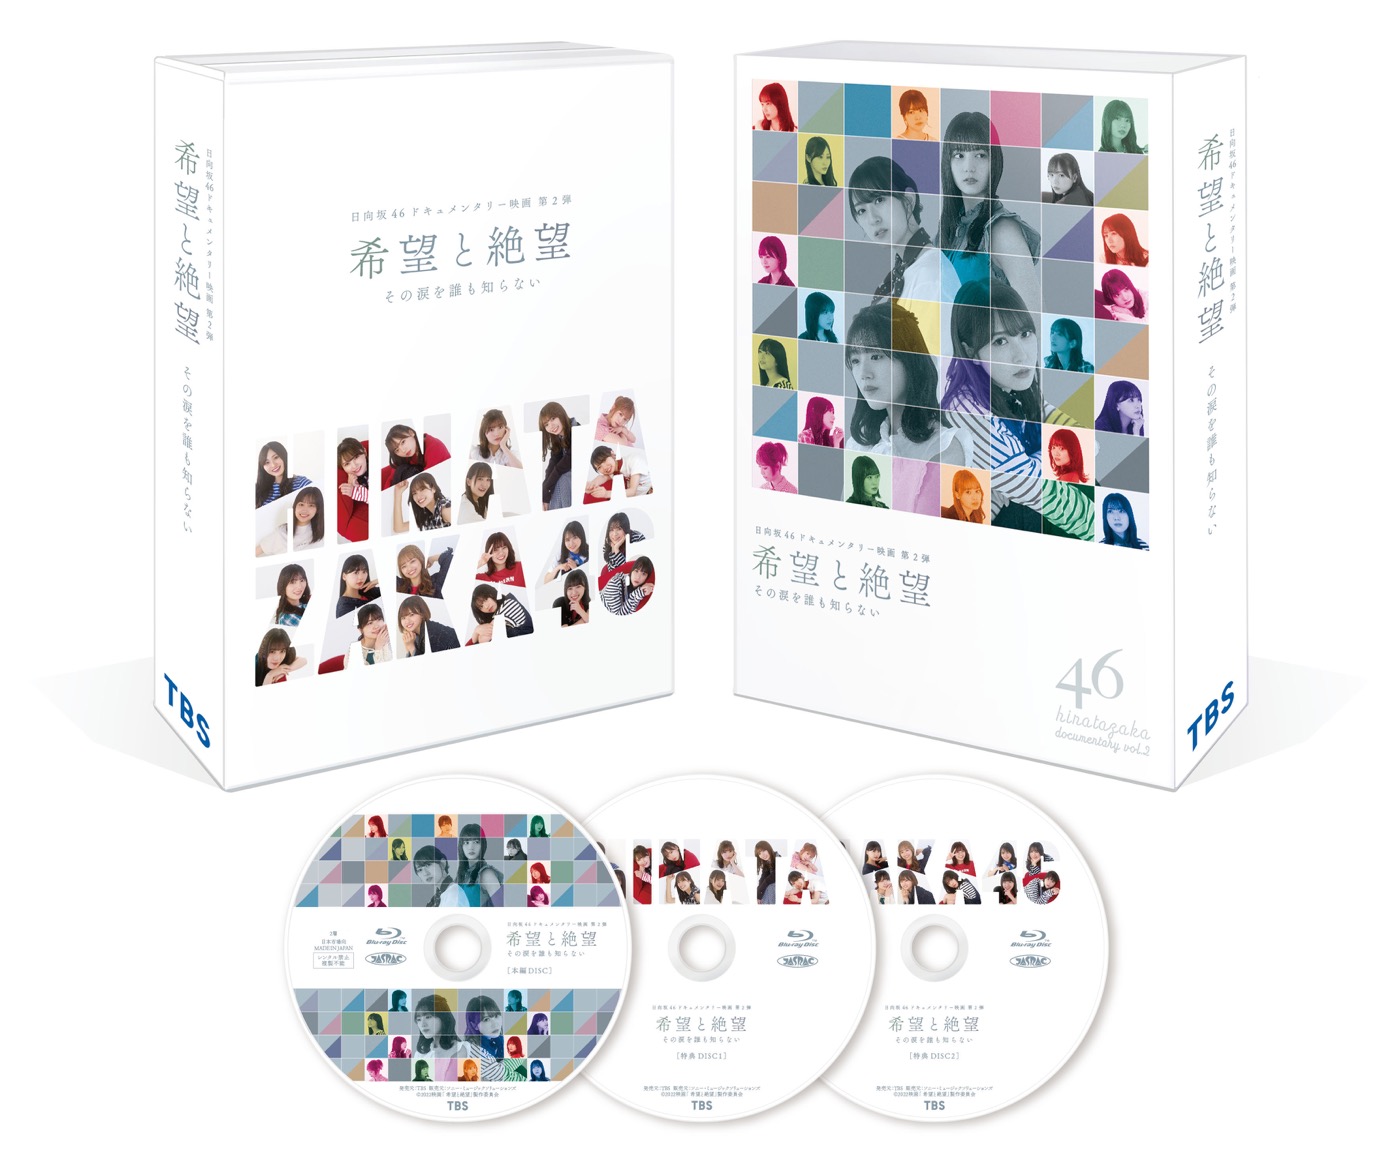 日向坂46のドキュメンタリー映画第2弾『希望と絶望』BD＆DVD映像作品化が決定